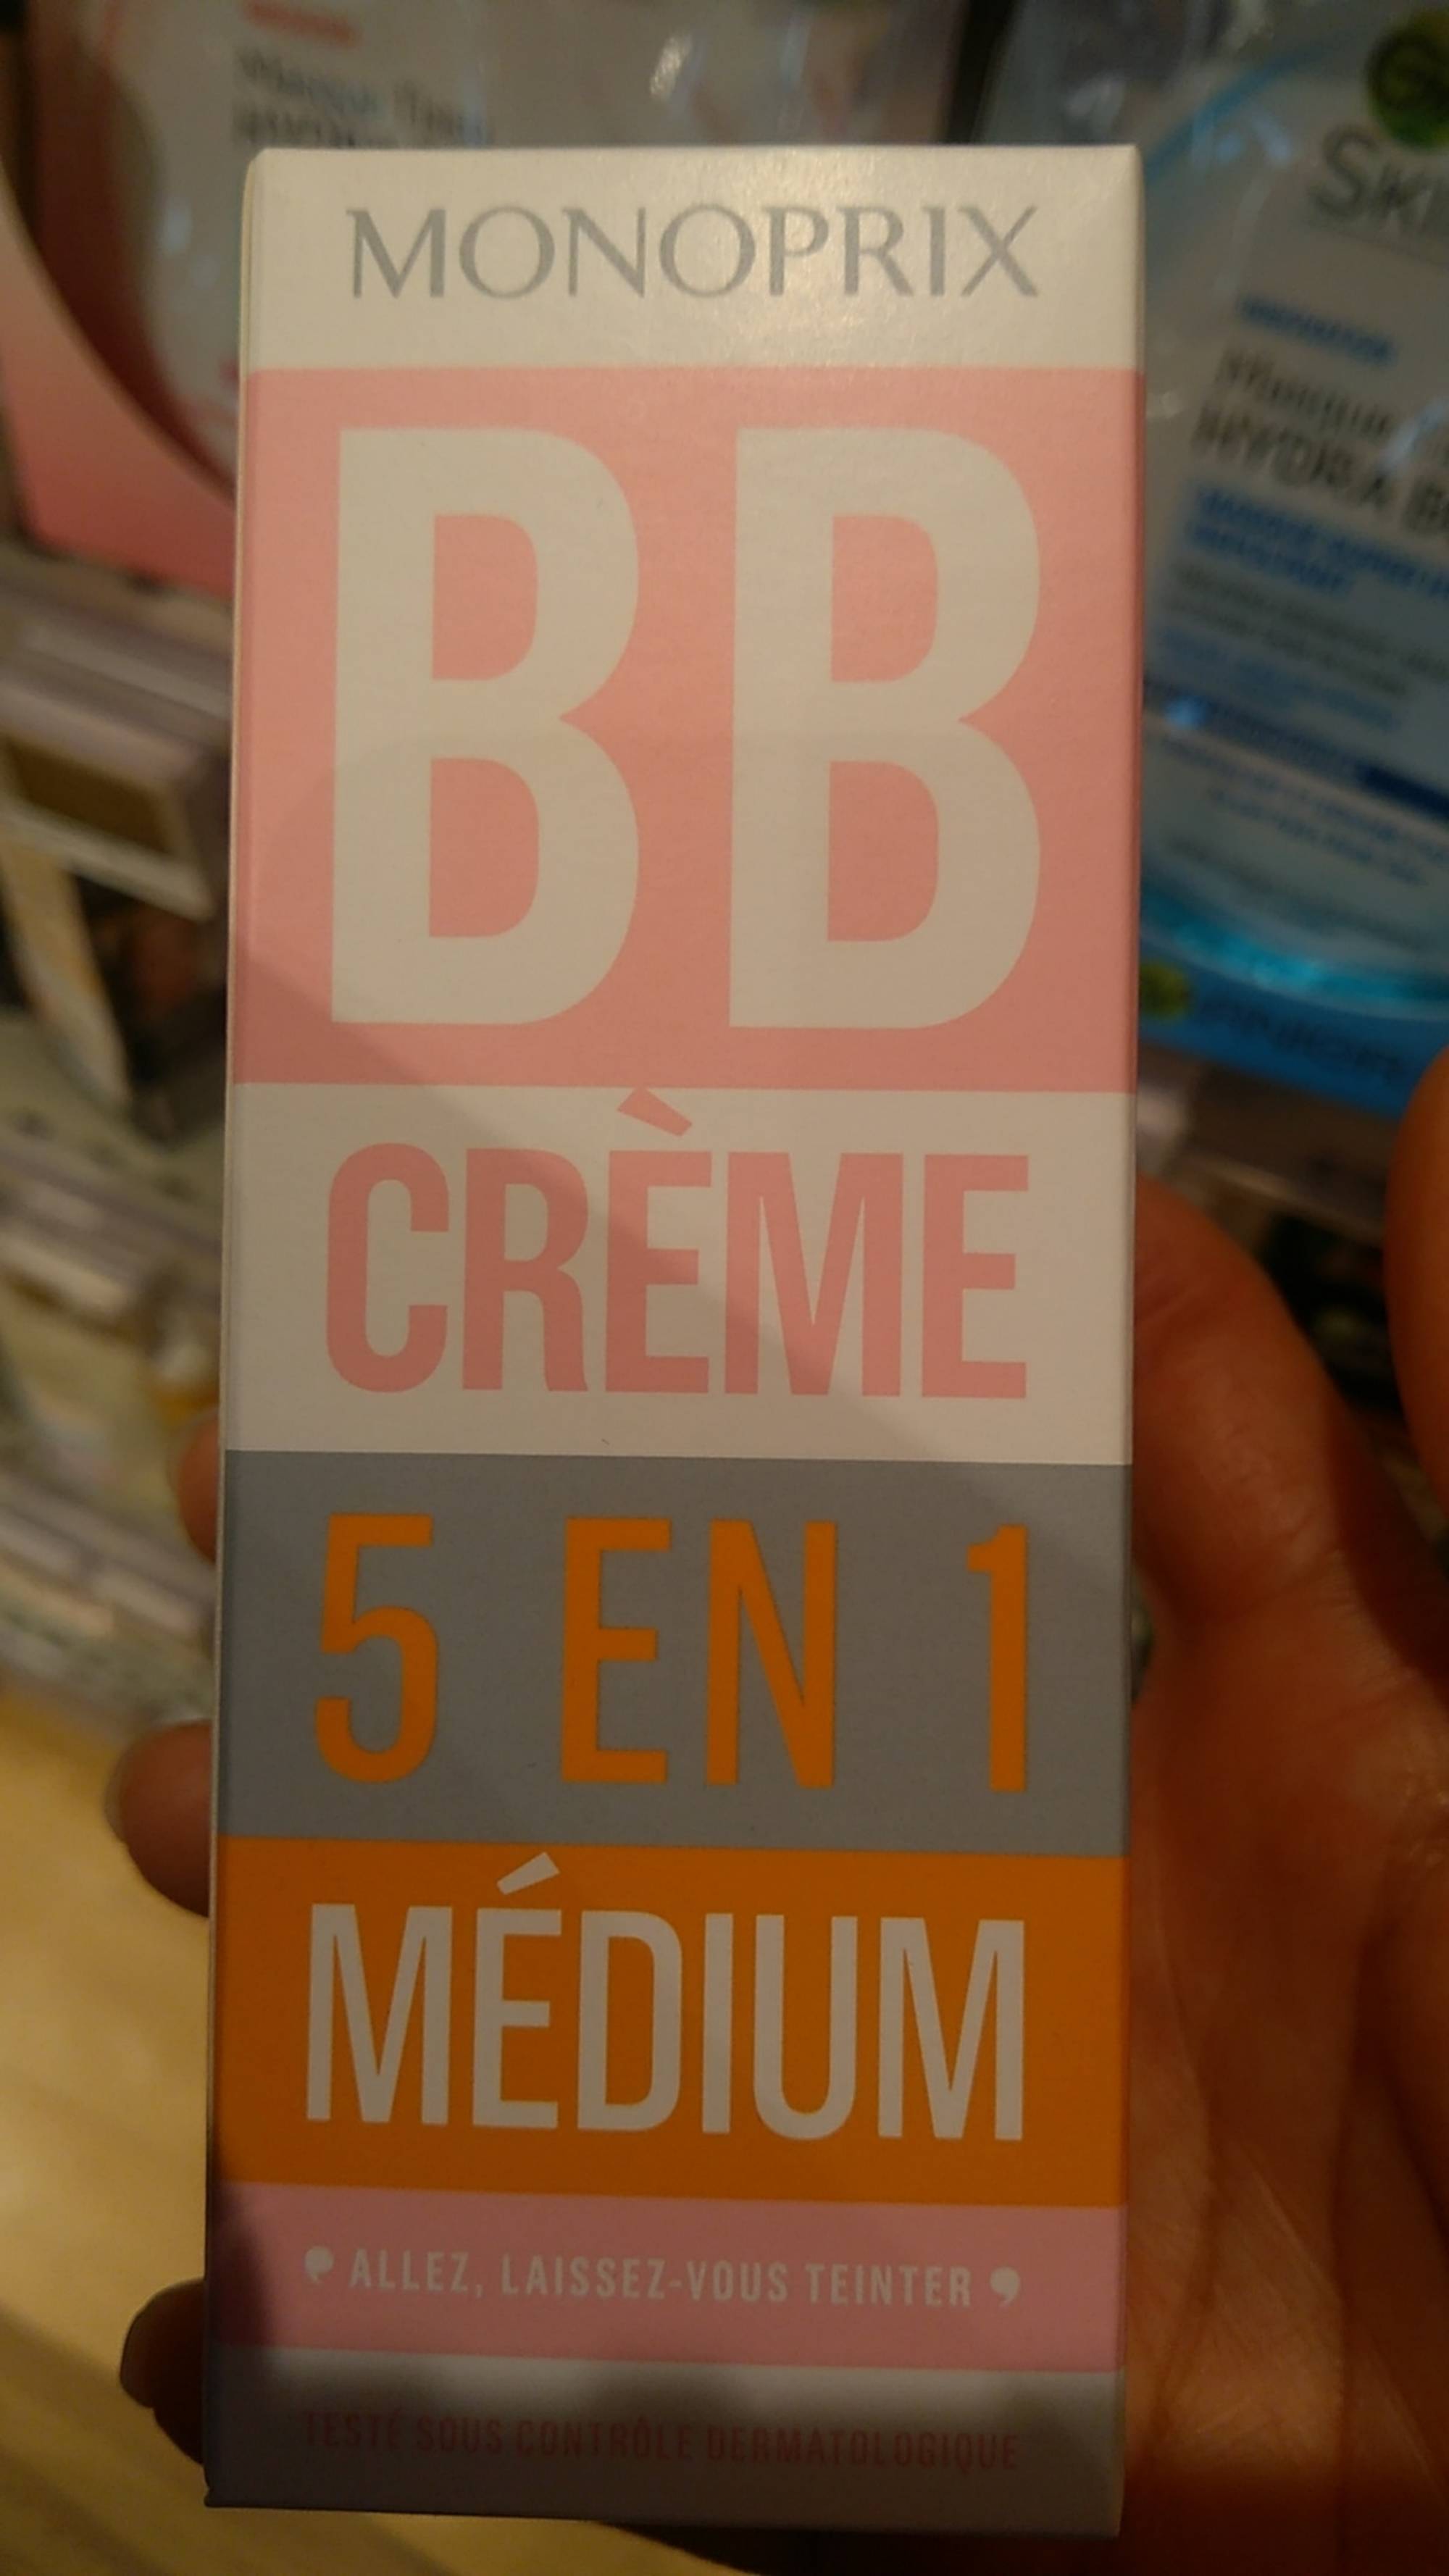 MONOPRIX - BB crème 5 en 1 médium